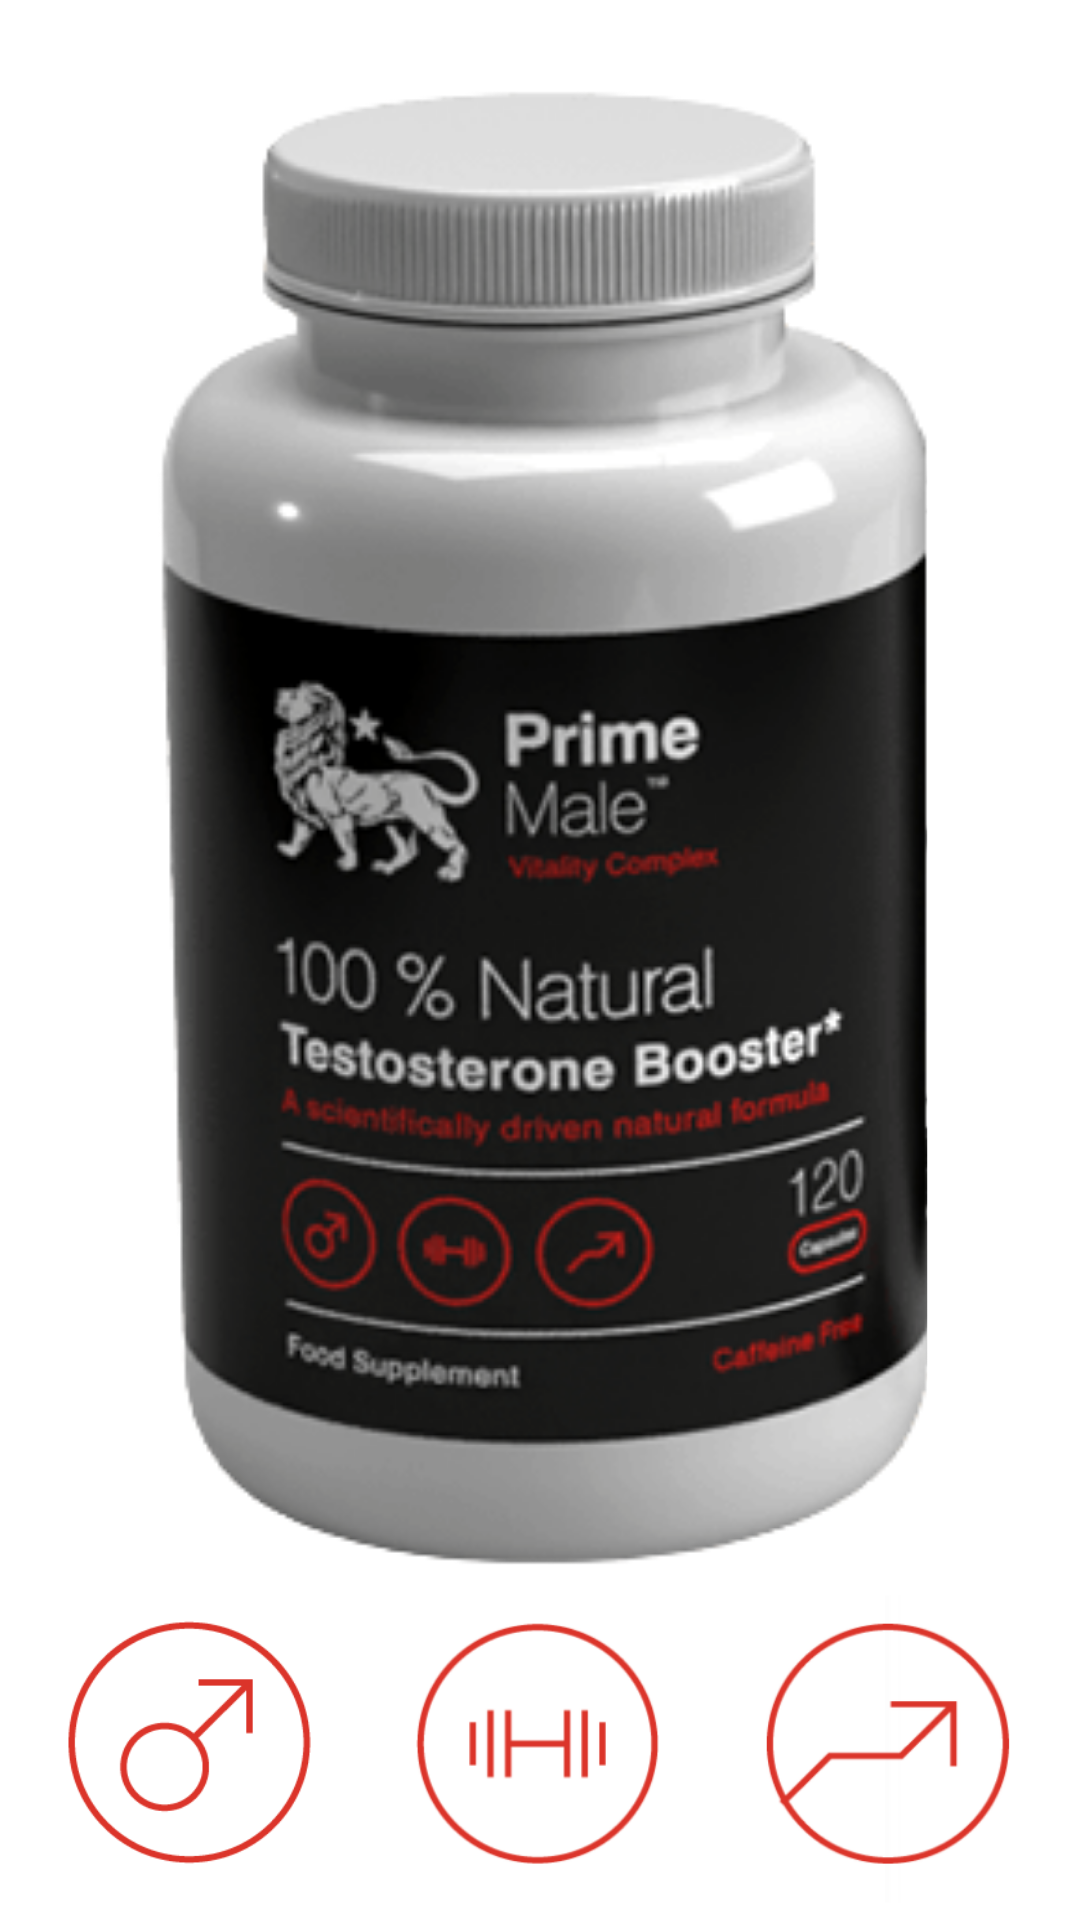 Prime male testosterone booster